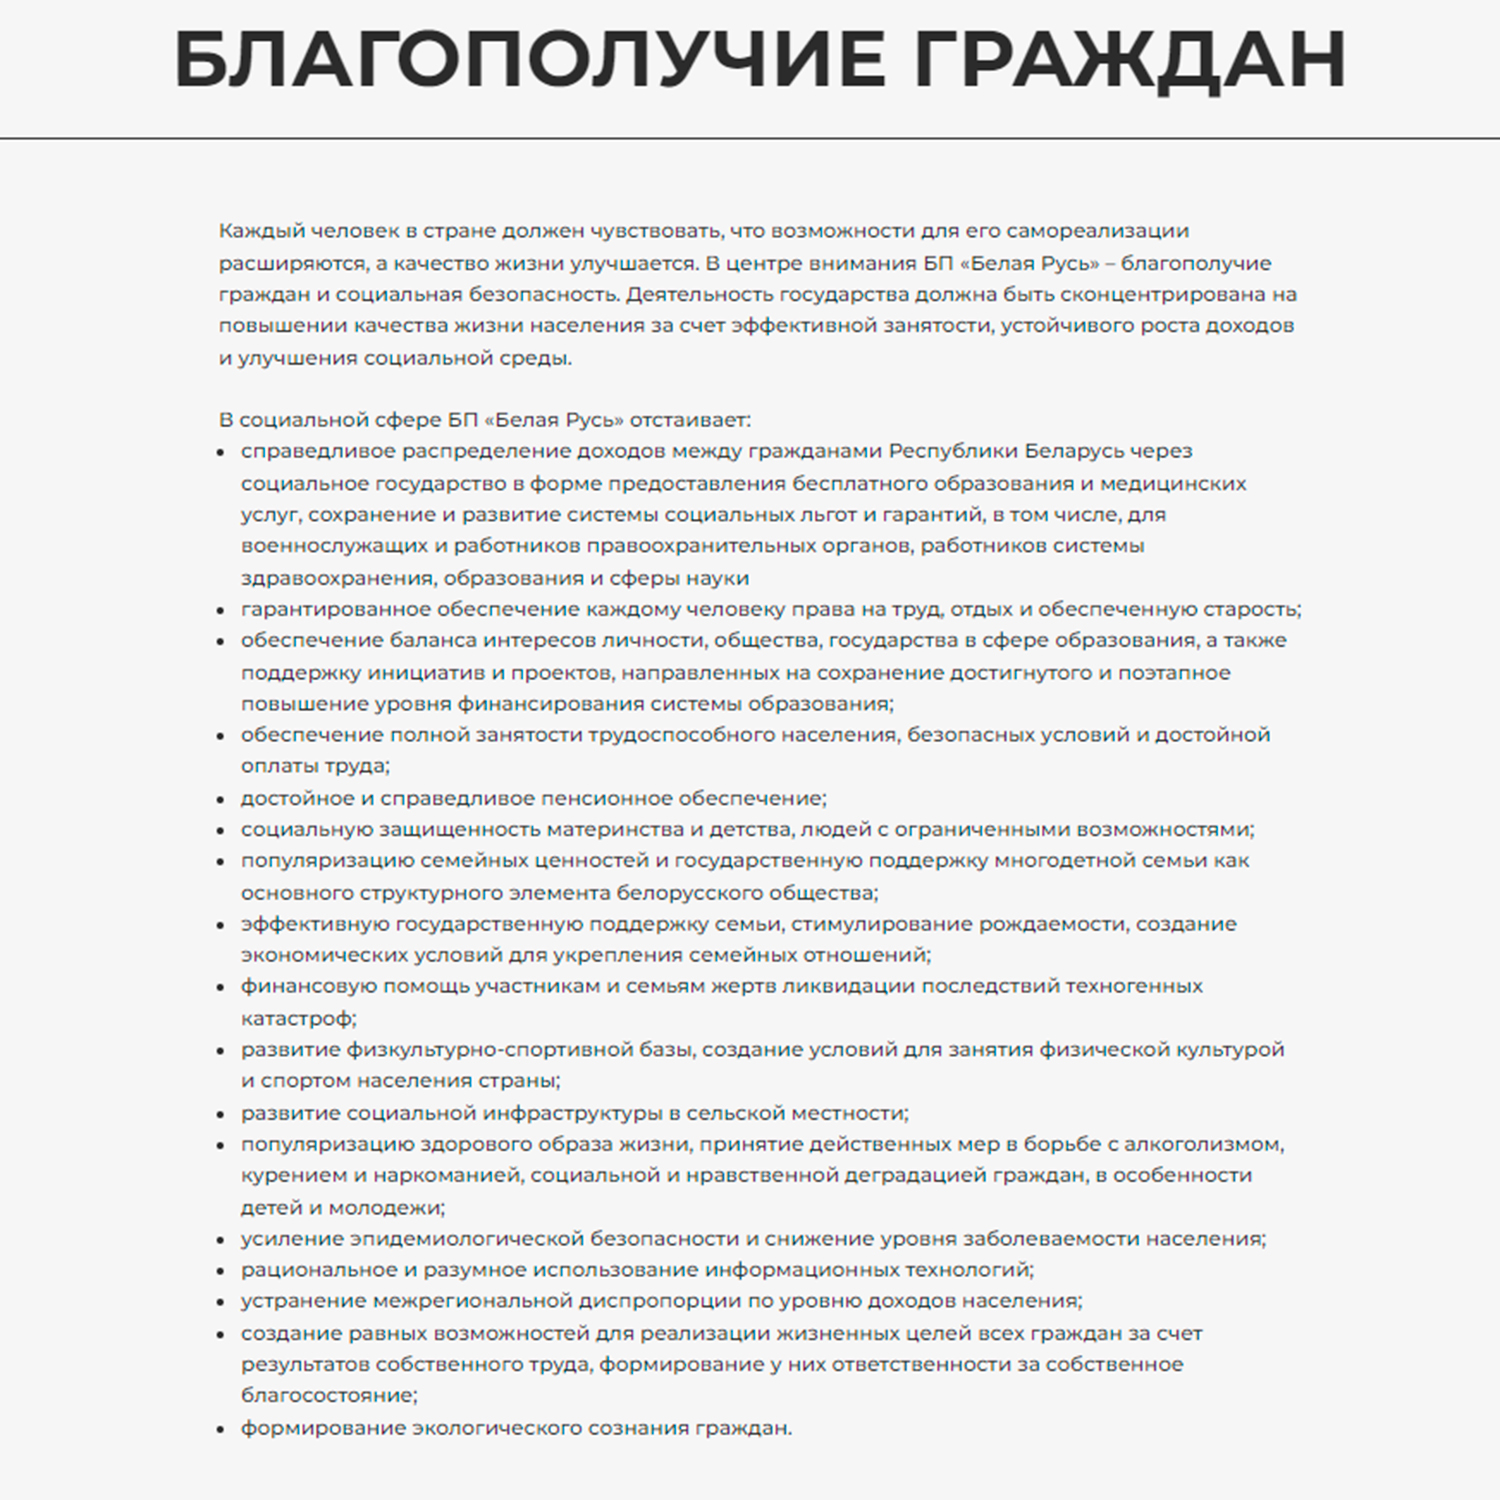 Выдержки из Устава и Программы с сайта Белорусской партии «Белая Русь» (Страница 8)